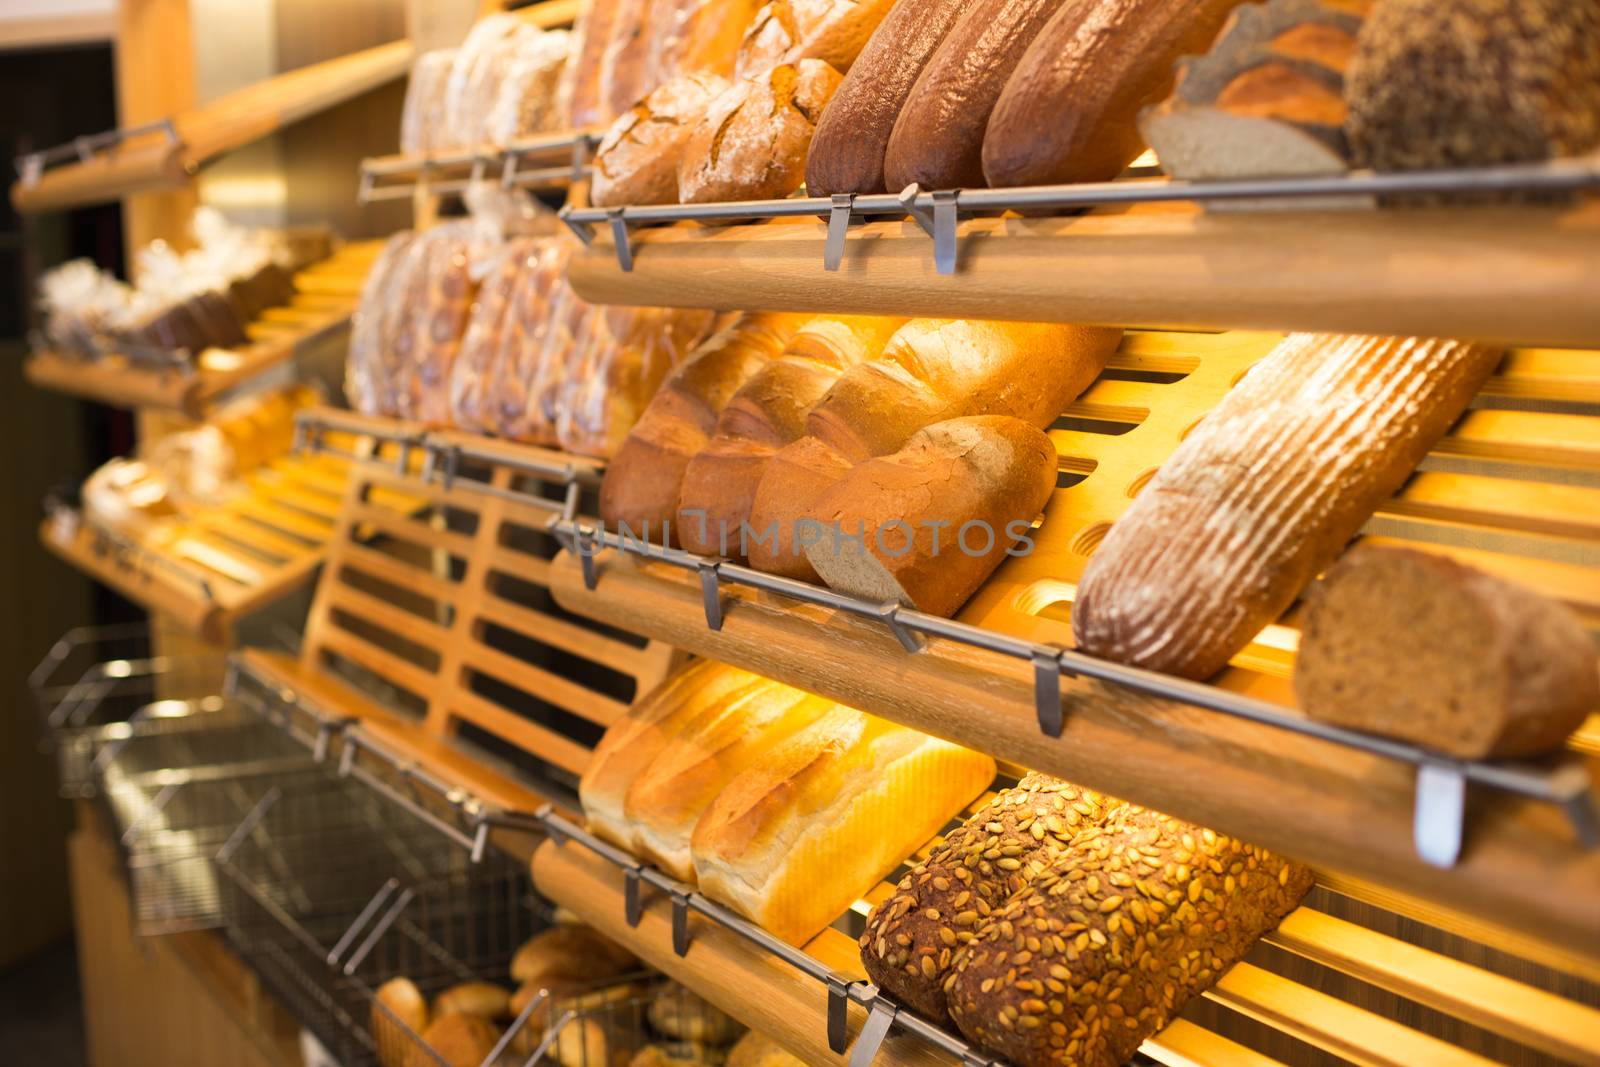 Bread in a bakery or baker's shop by ikonoklast_fotografie